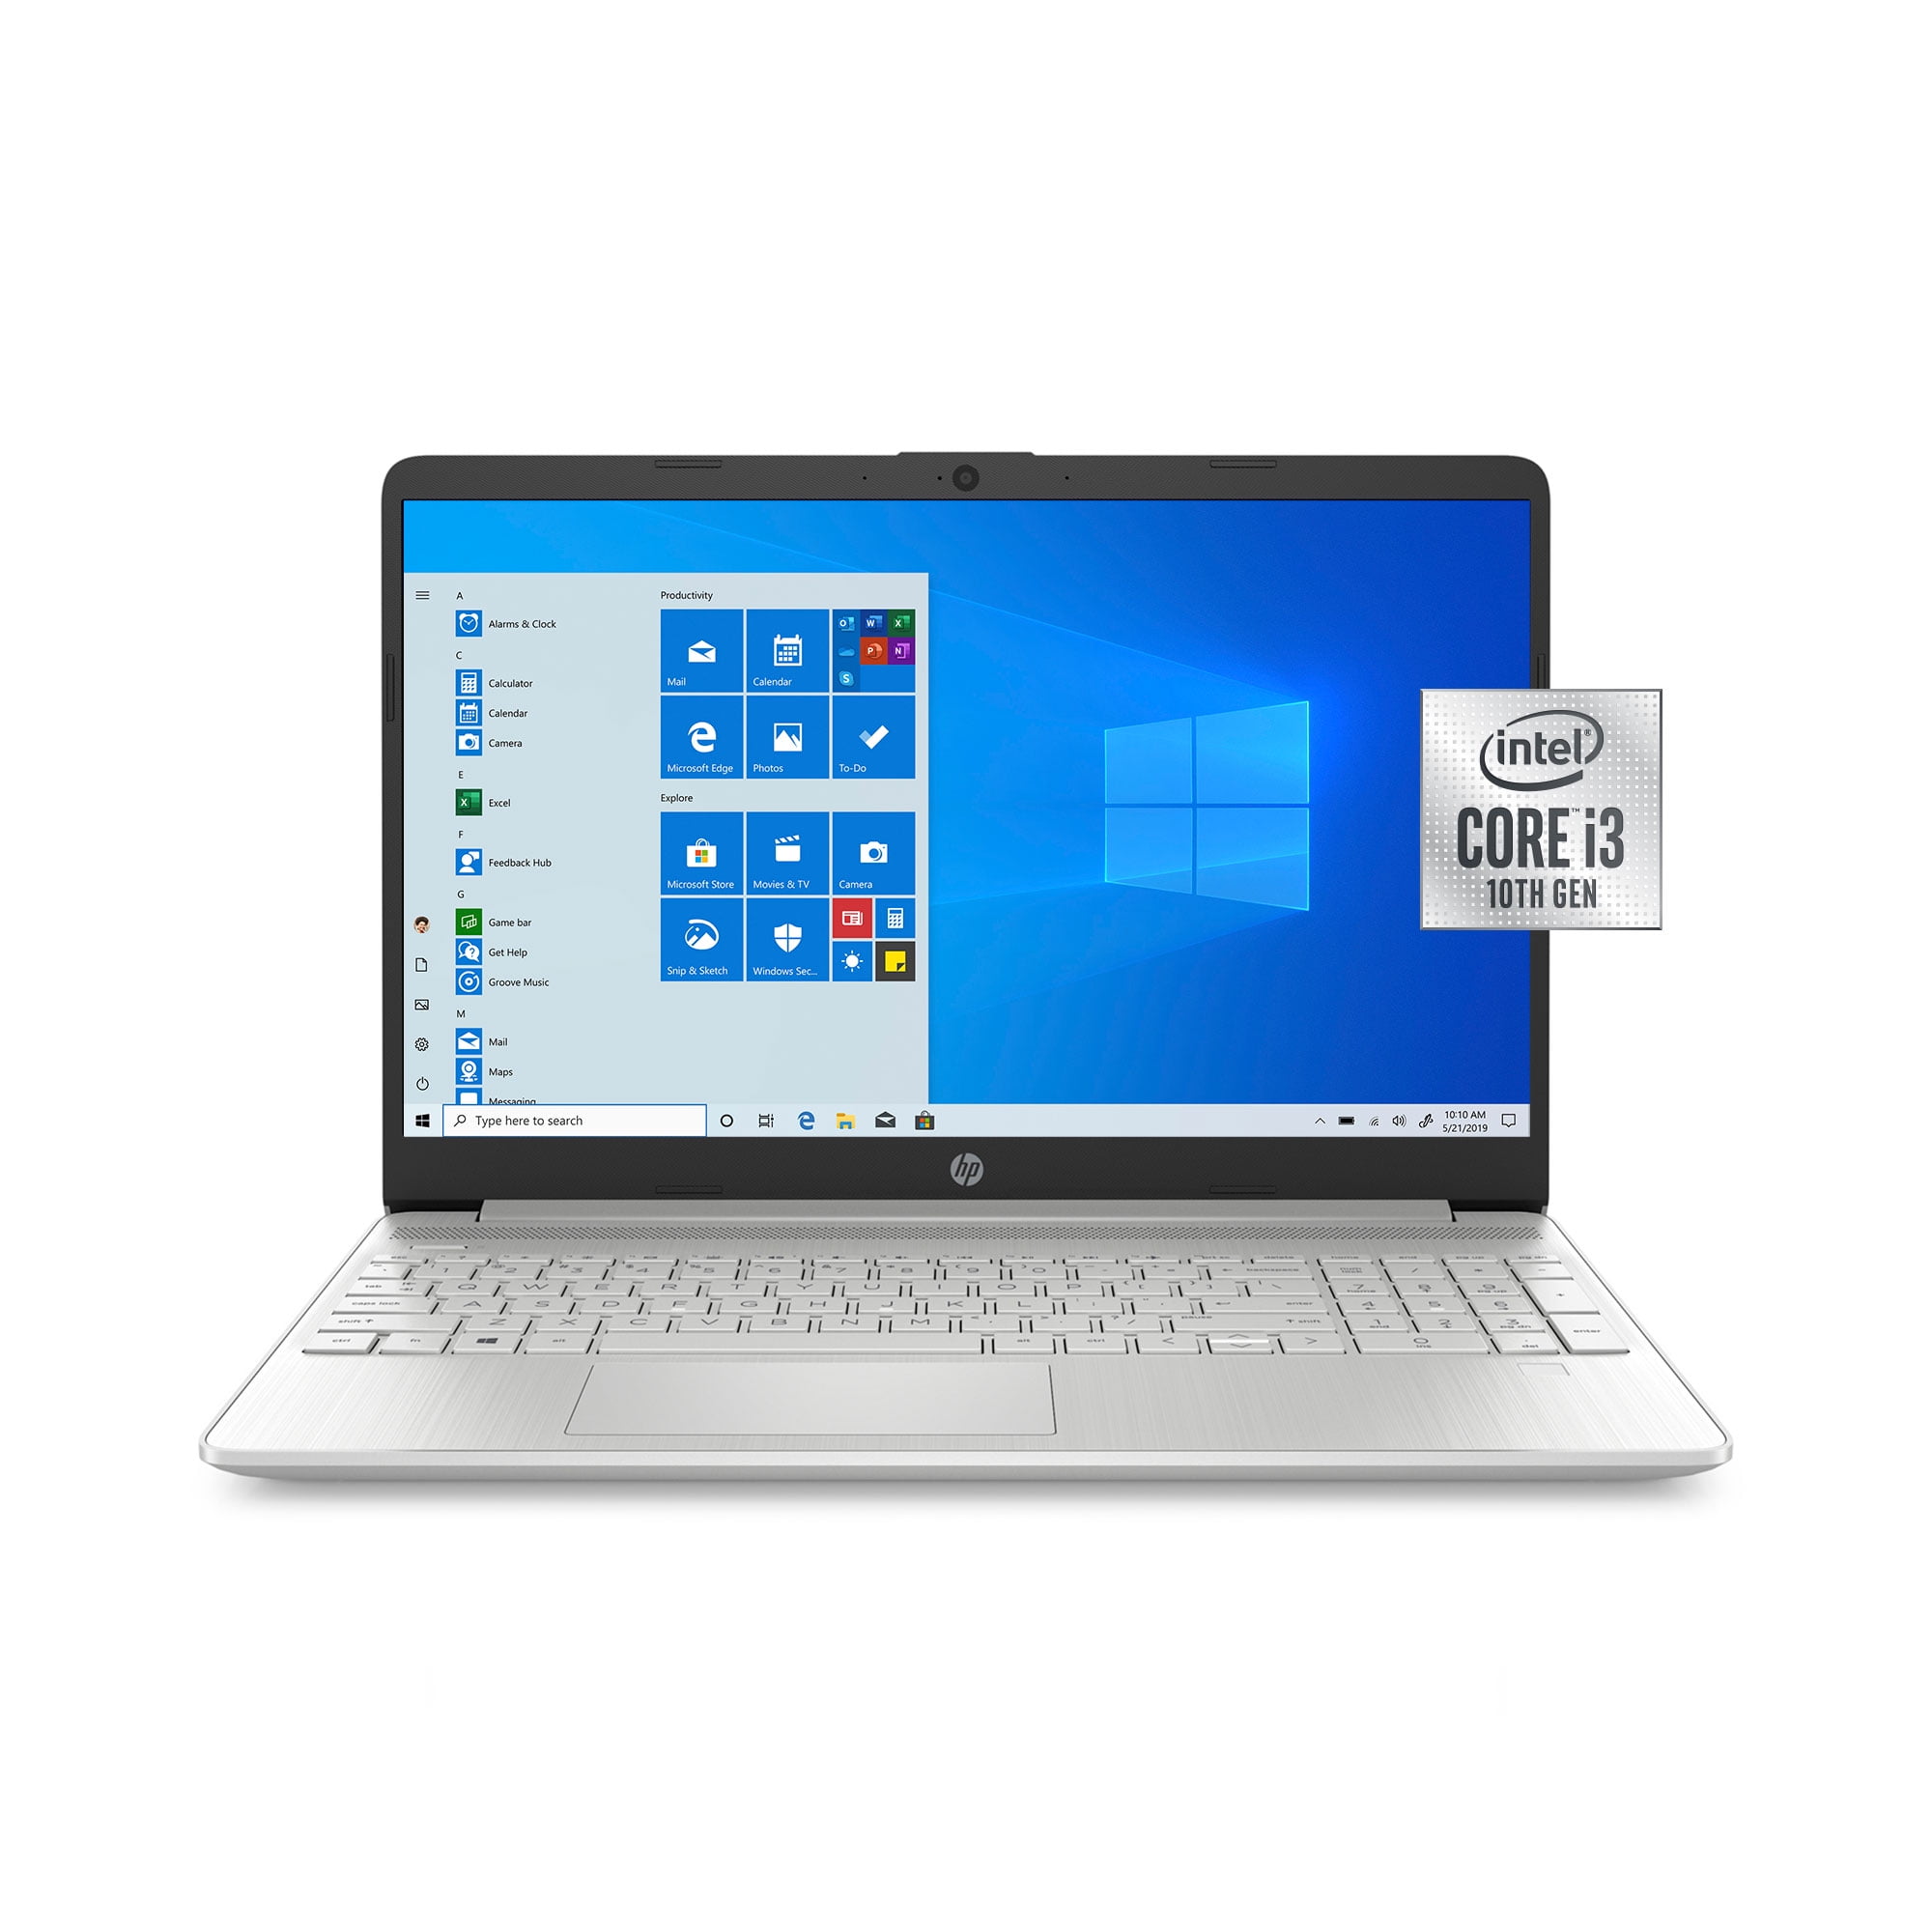 fortjener grube Glat HP 15, Intel Core i3, 8GB RAM, 256GB SSD Laptop - Walmart.com